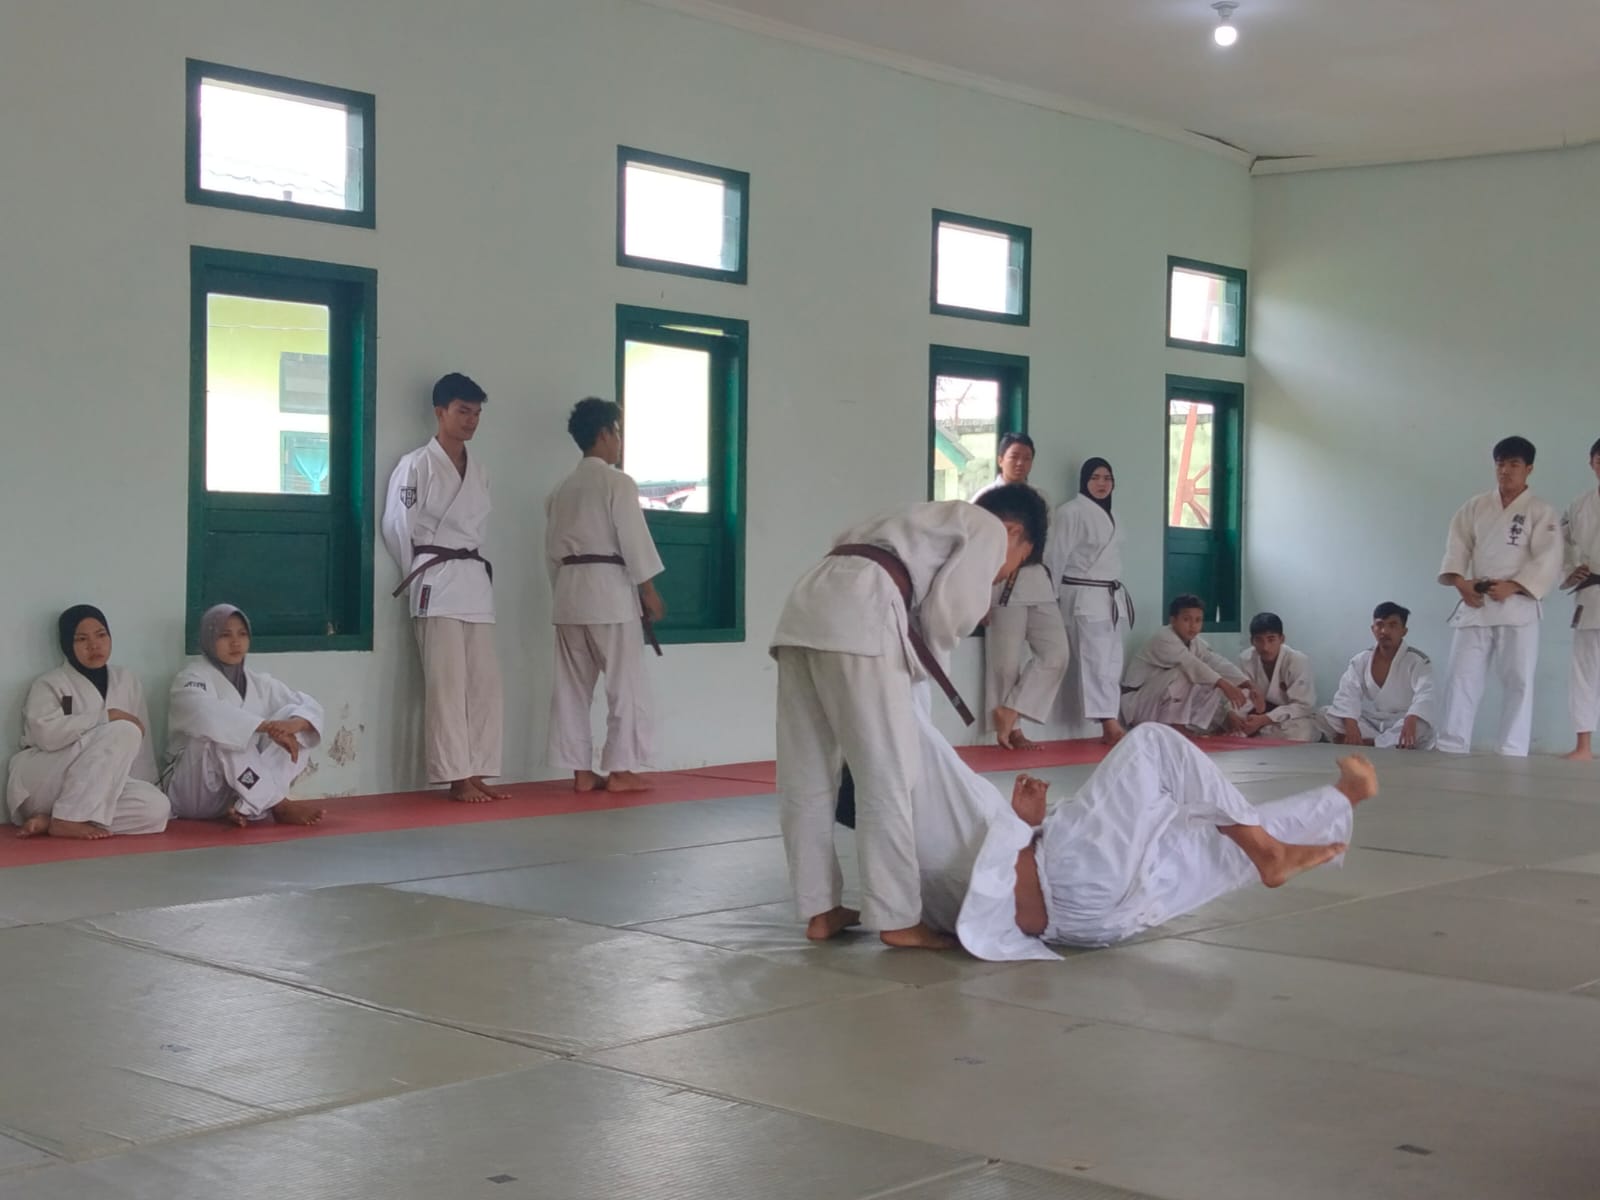 Persatuan Judo Seluruh Indonesia [PJSI] Sumatera Selatan akan menggelar kenaikan sabuk dari sabuk cokelat ke sabuk hitam [DAN 1].